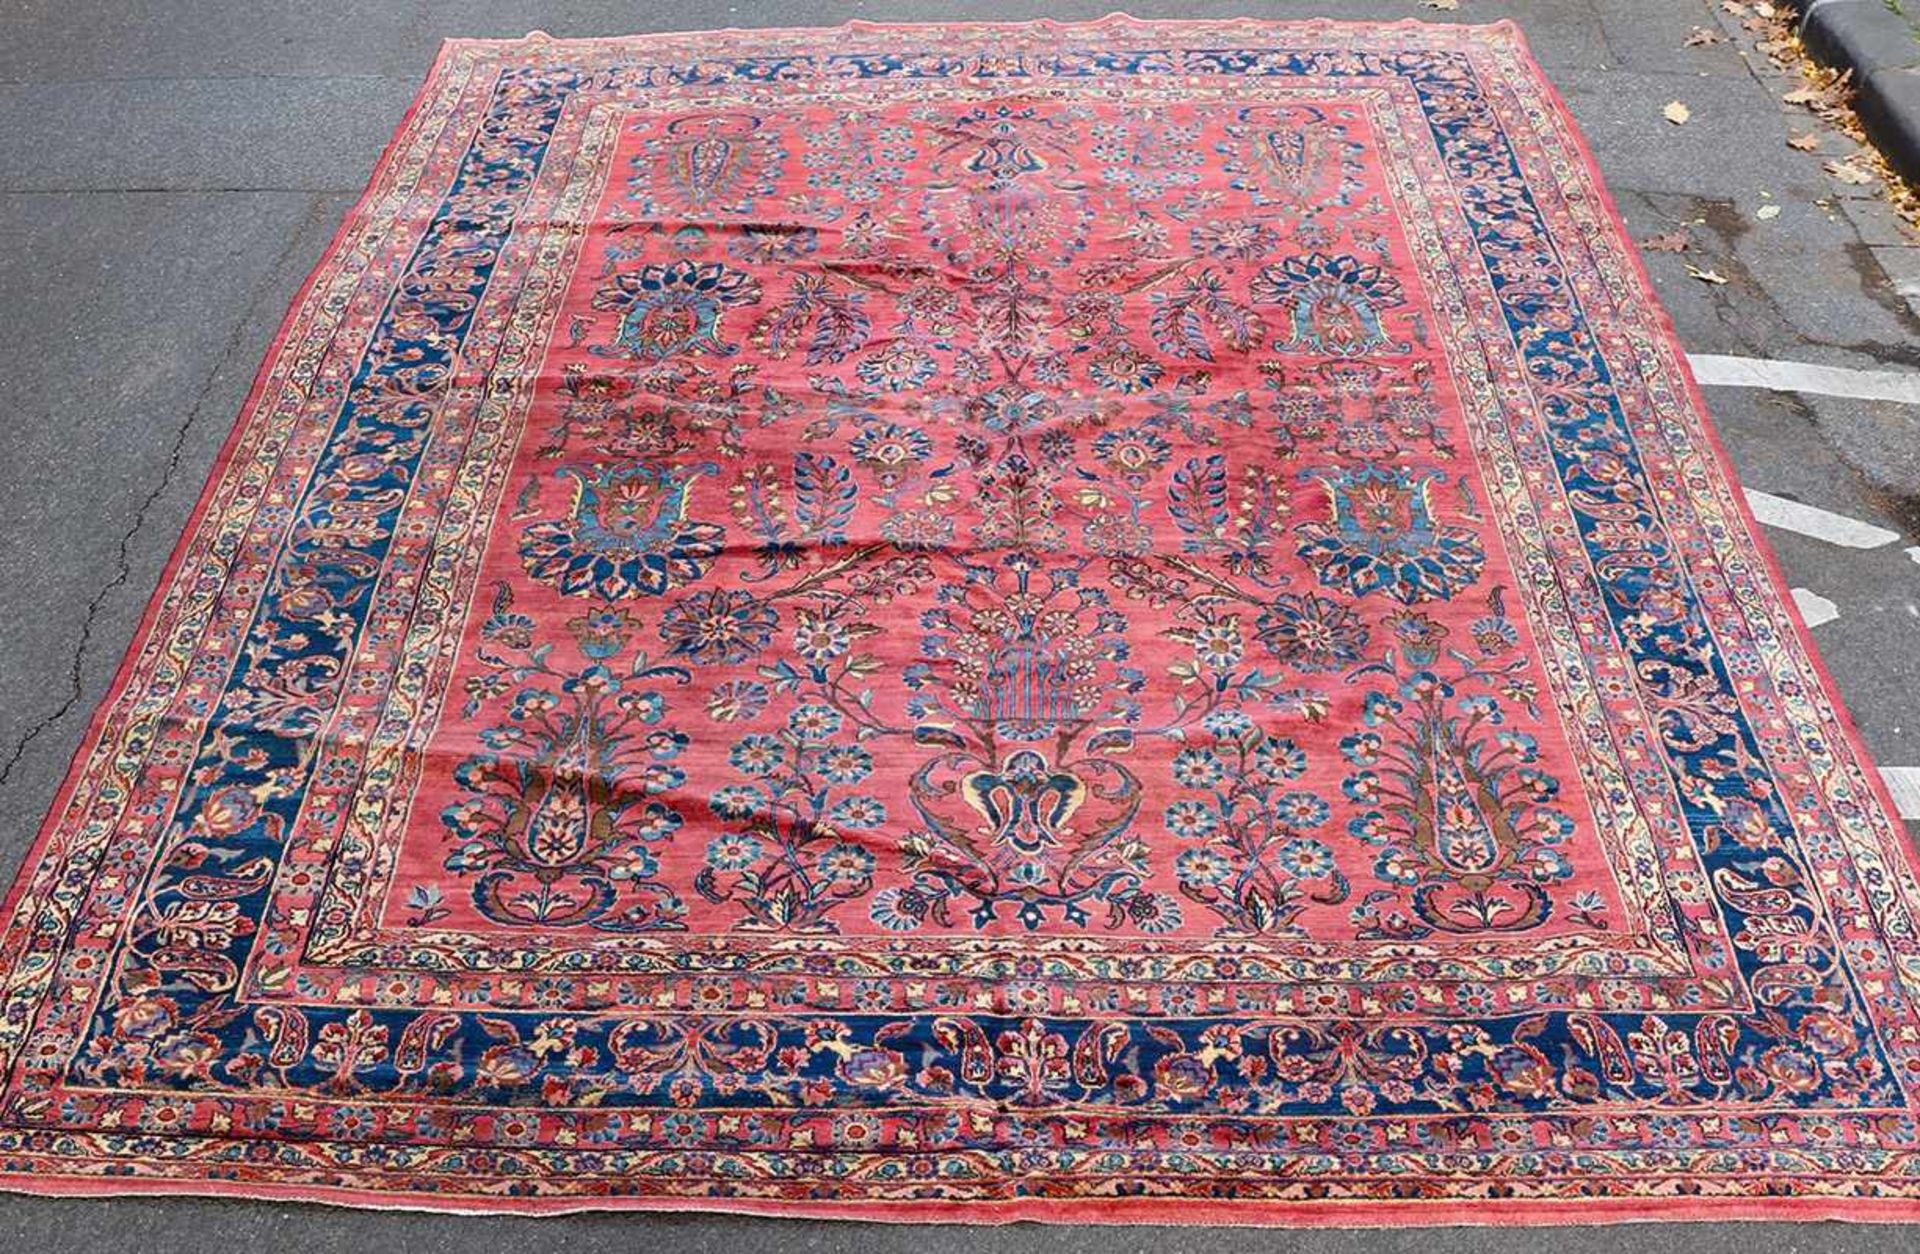 Teppich Amerikanischer Sarouk1920er Jahre427 x 314 cm.Carpet American Sarouk1920s427 x 314 cm.